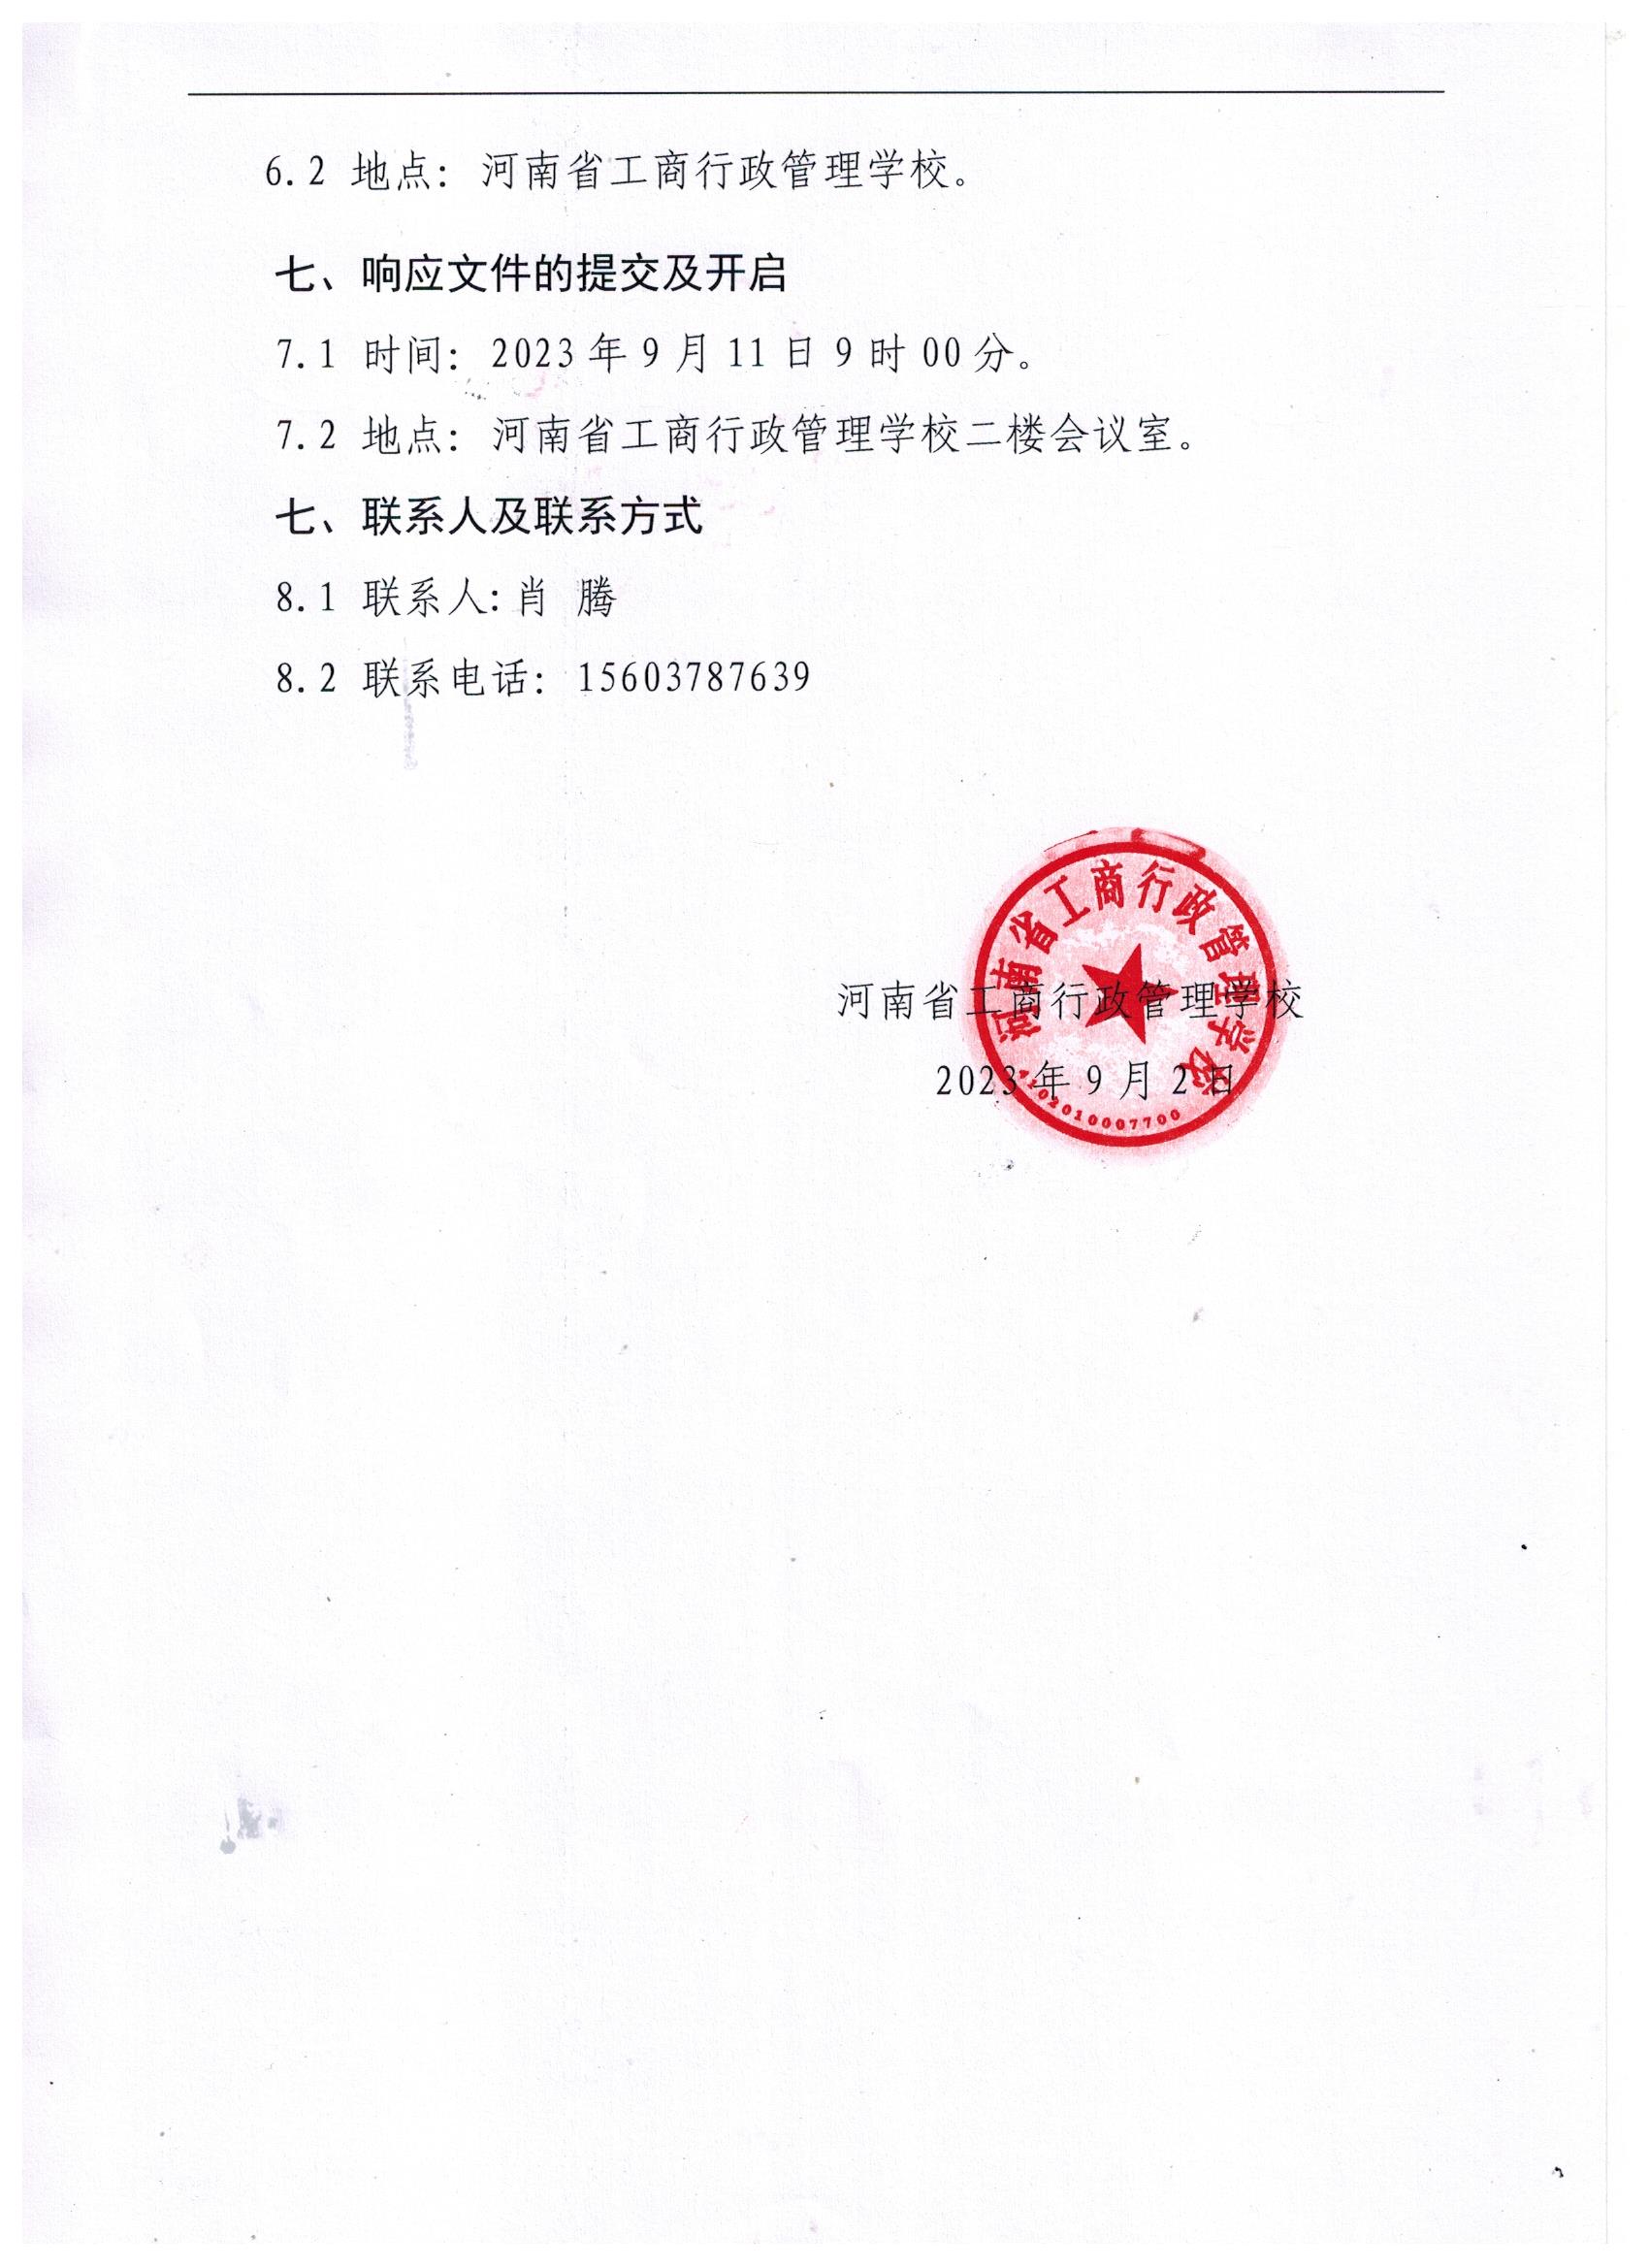 河南省工商行政管理学校警务室改造项目公开招标的公告